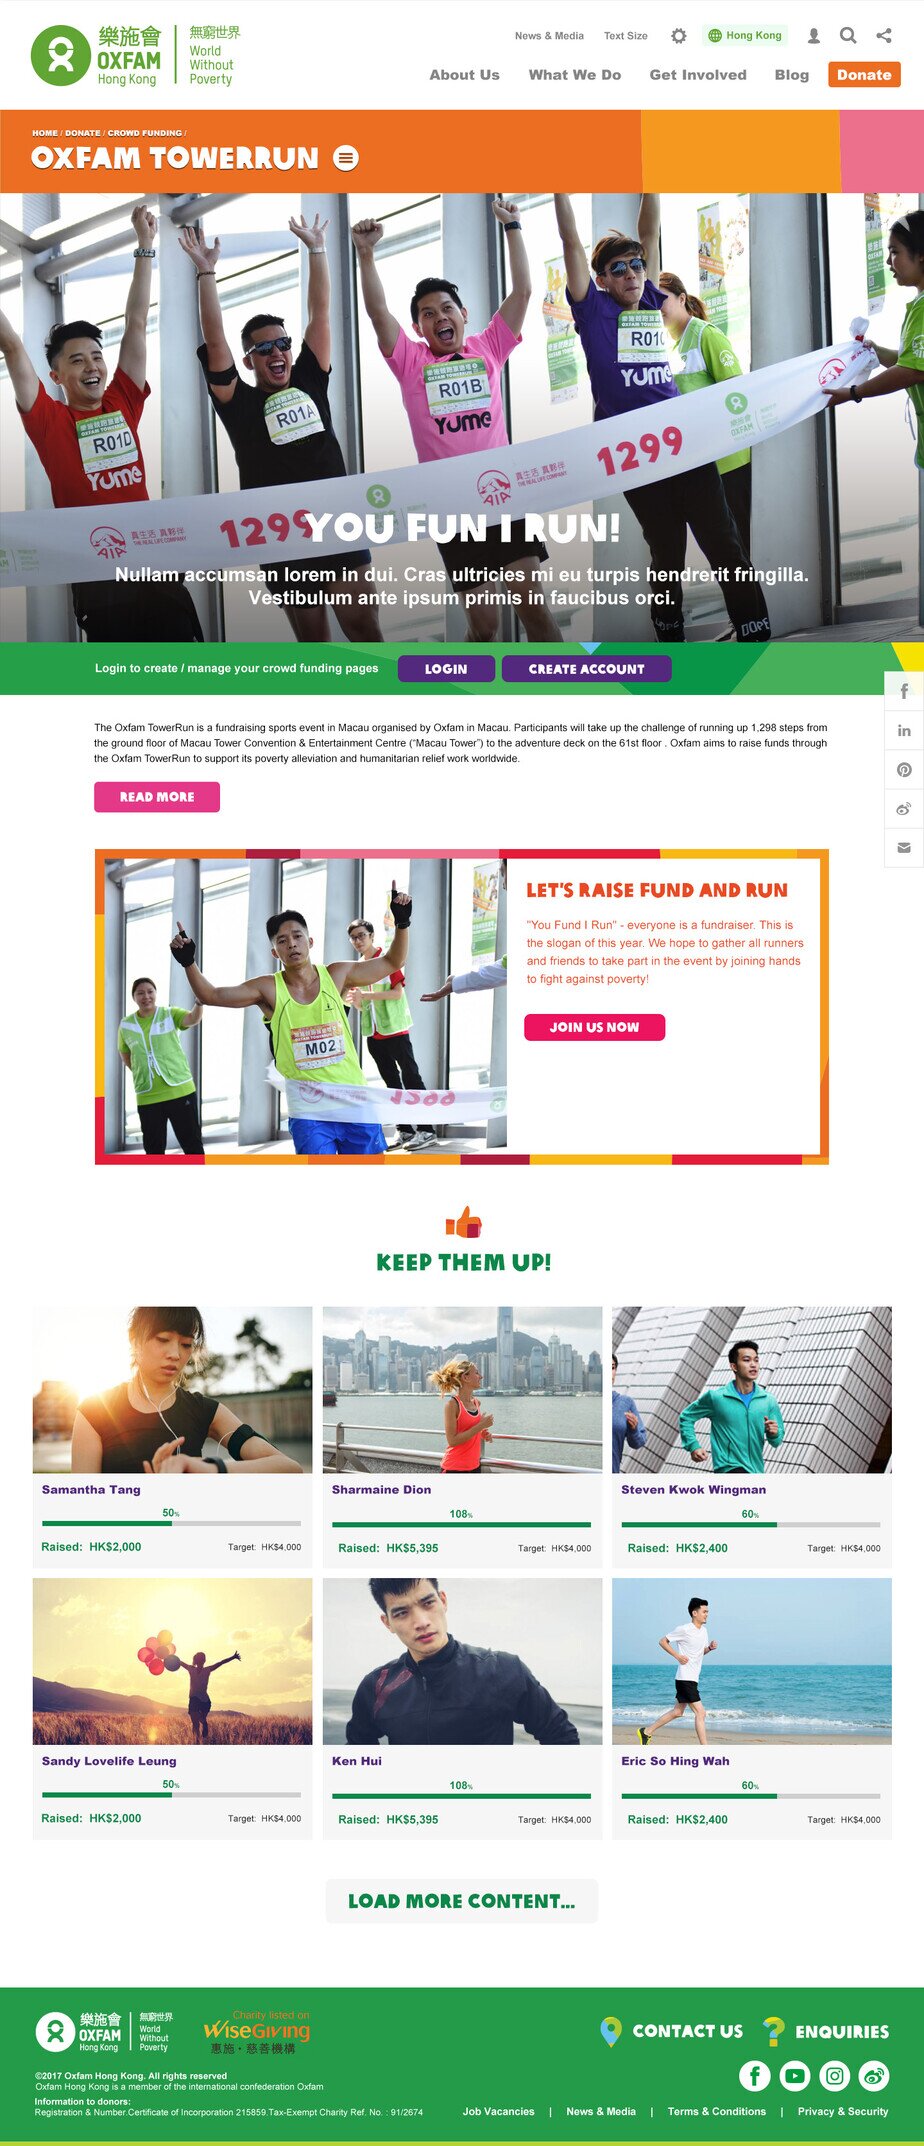 Oxfam Hong Kong website screenshot for desktop version 4 of 7